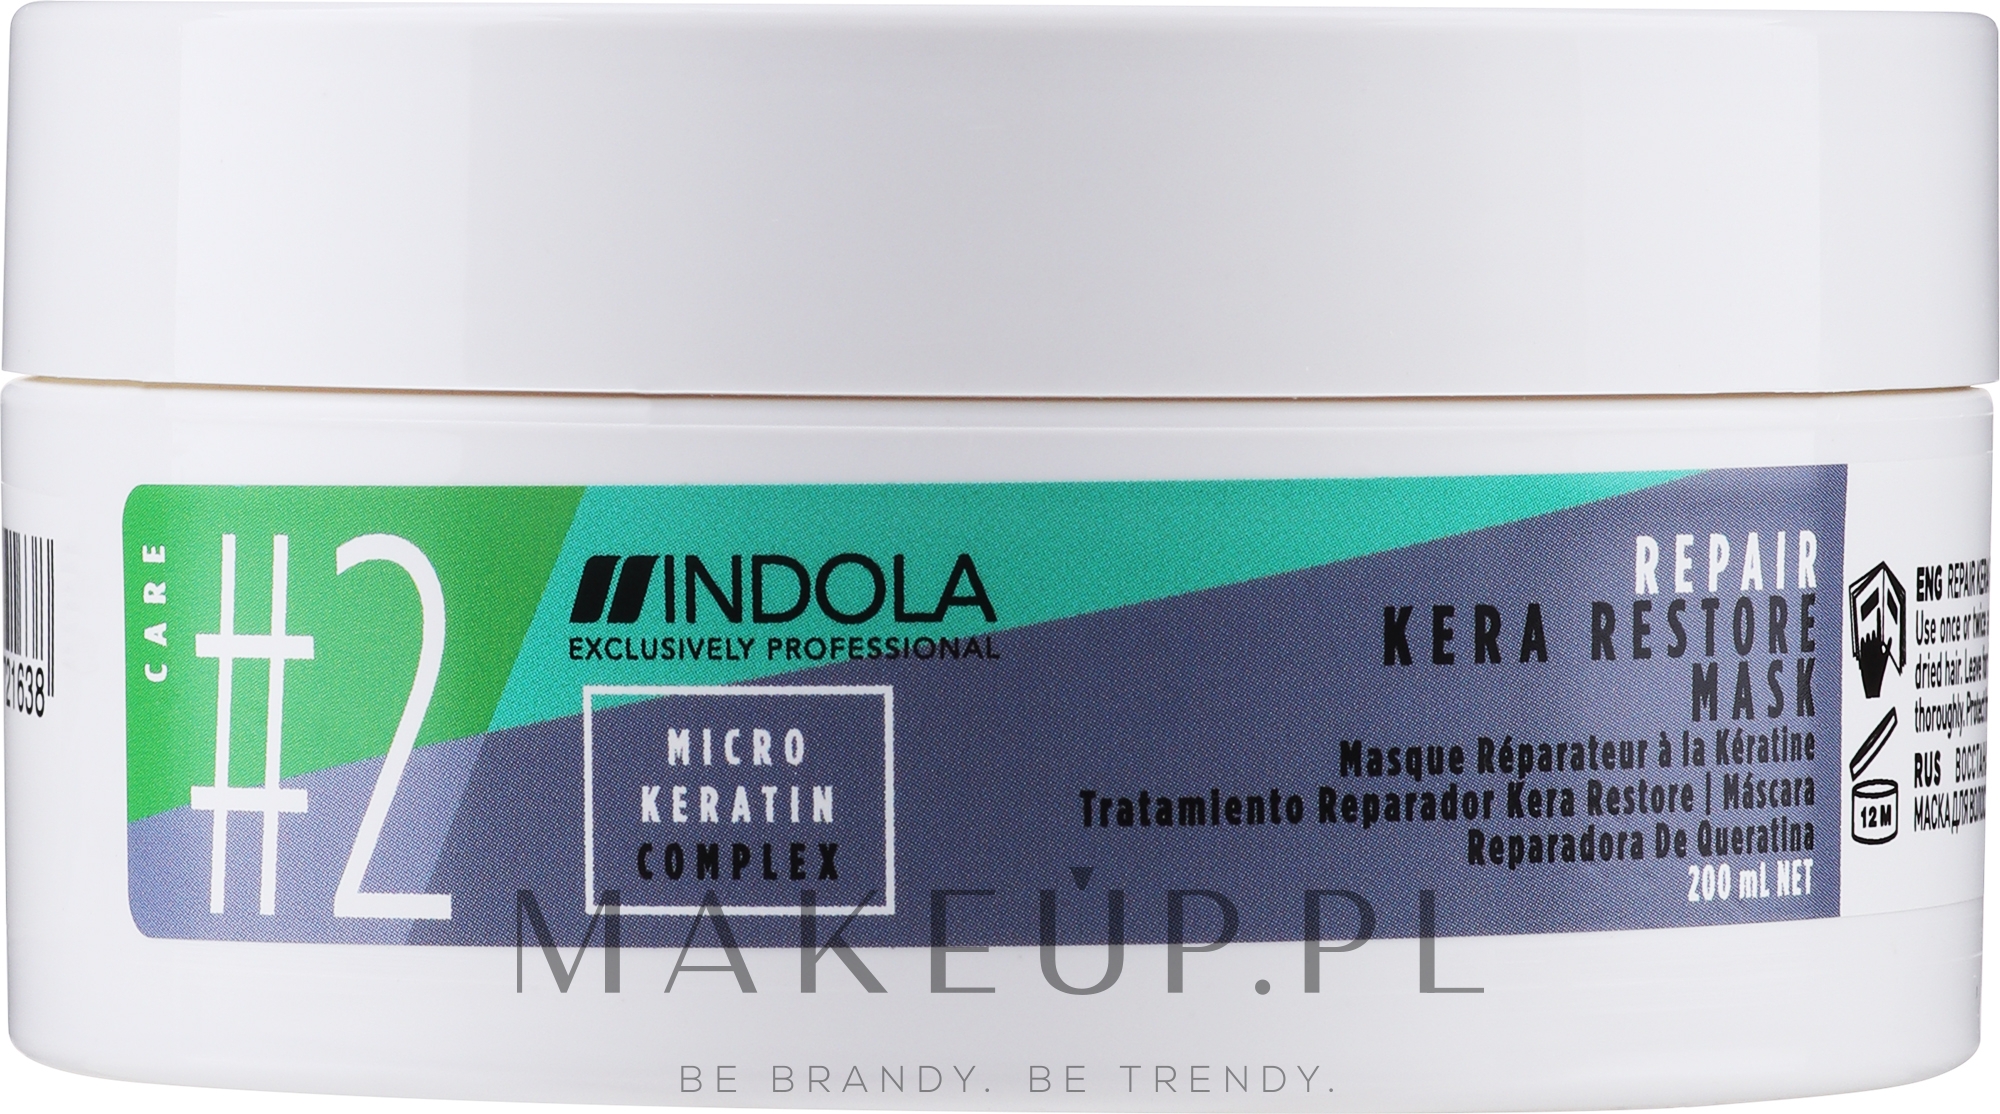 Keratynowa maska do włosów - Indola Innova Kera Restore Mask — Zdjęcie 200 ml